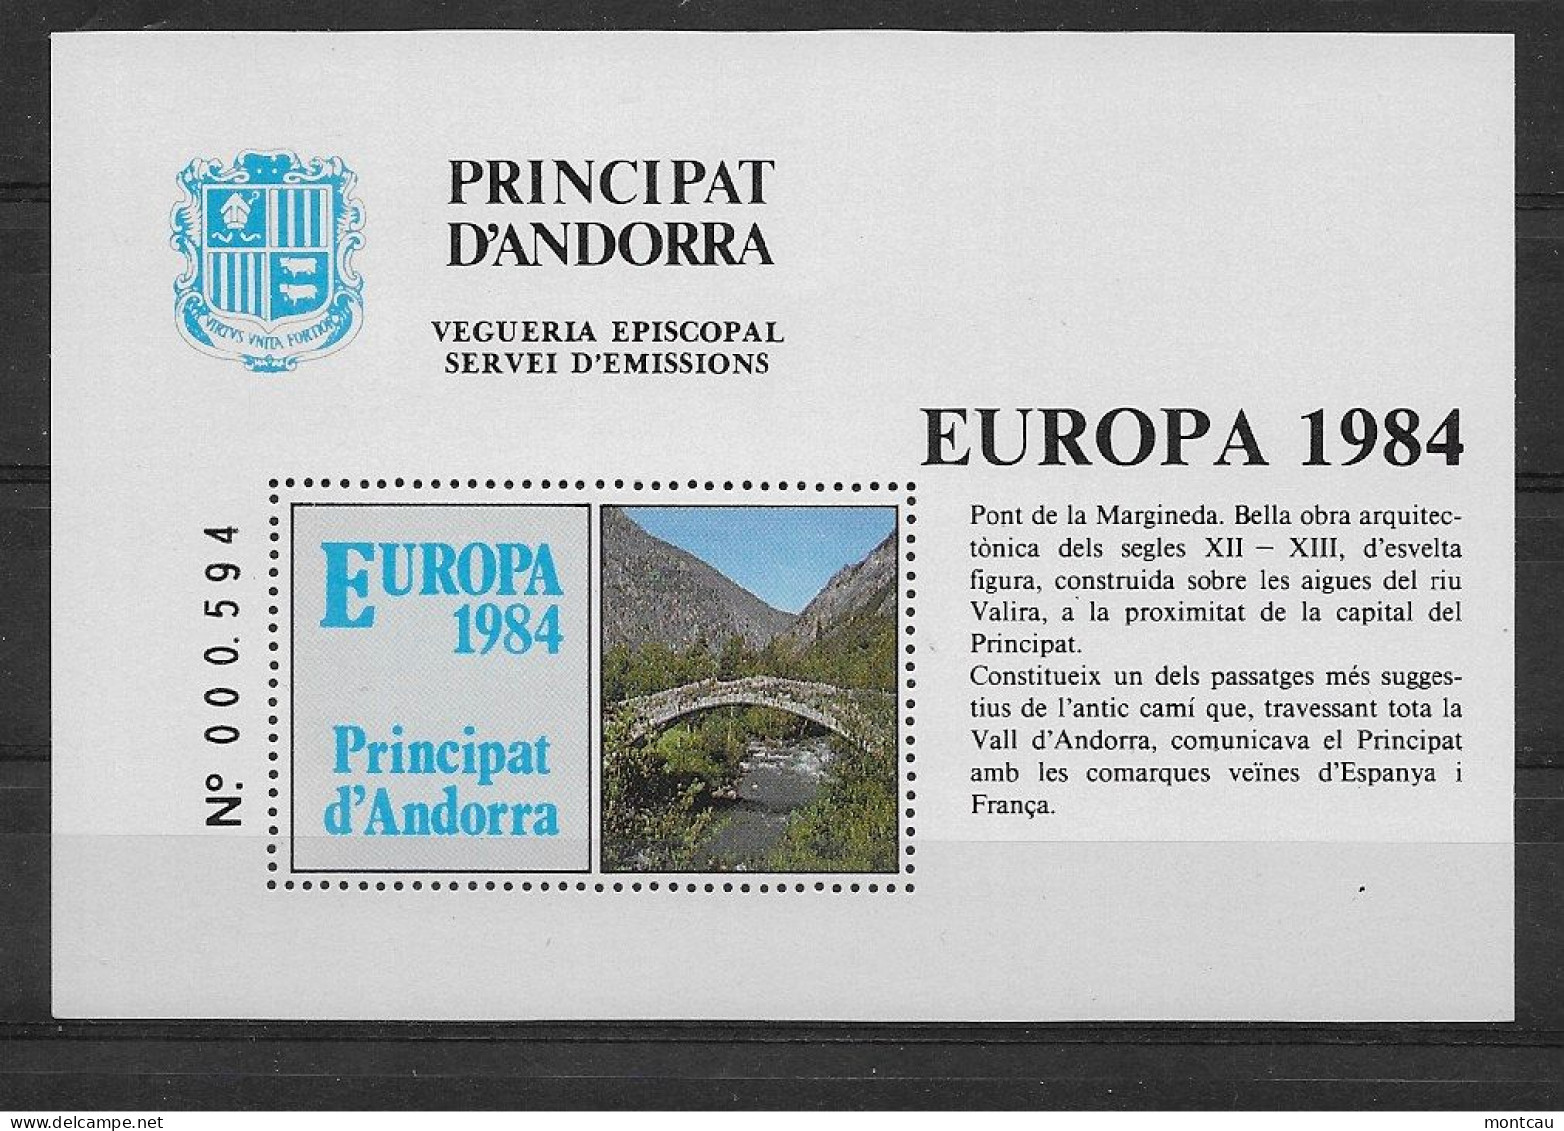 Andorra - 1984 - Vegueria Episcopal Europa - Viguerie Episcopale